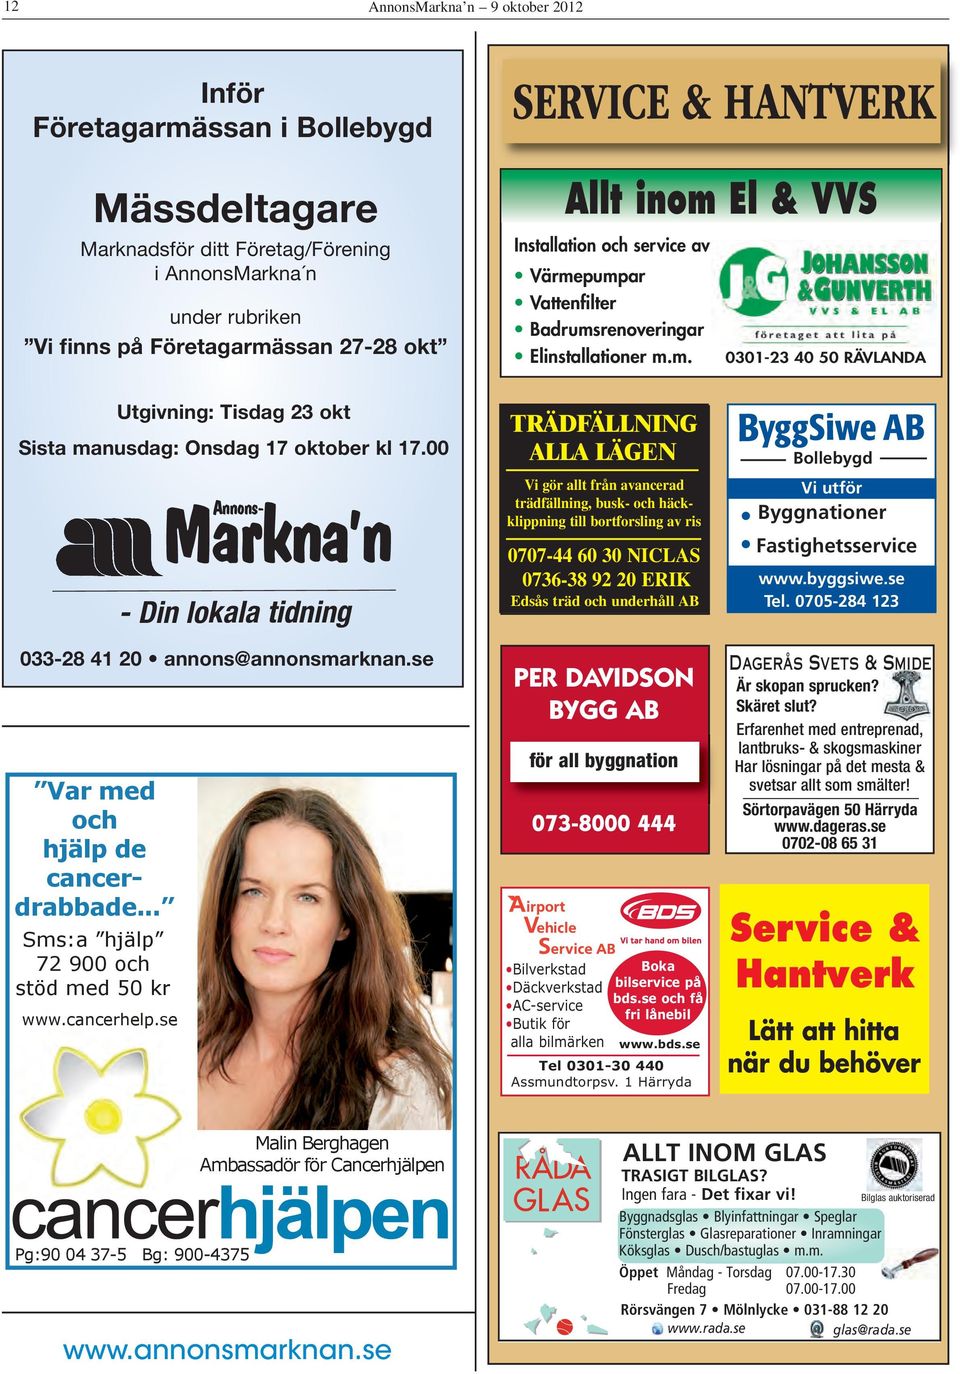 00 Markna n Annons- - Din lokala tidning 033-28 41 20 annons@annonsmarknan.se Var med och hjälp de cancerdrabbade... Sms:a hjälp 72 900 och stöd med 50 kr www.cancerhelp.